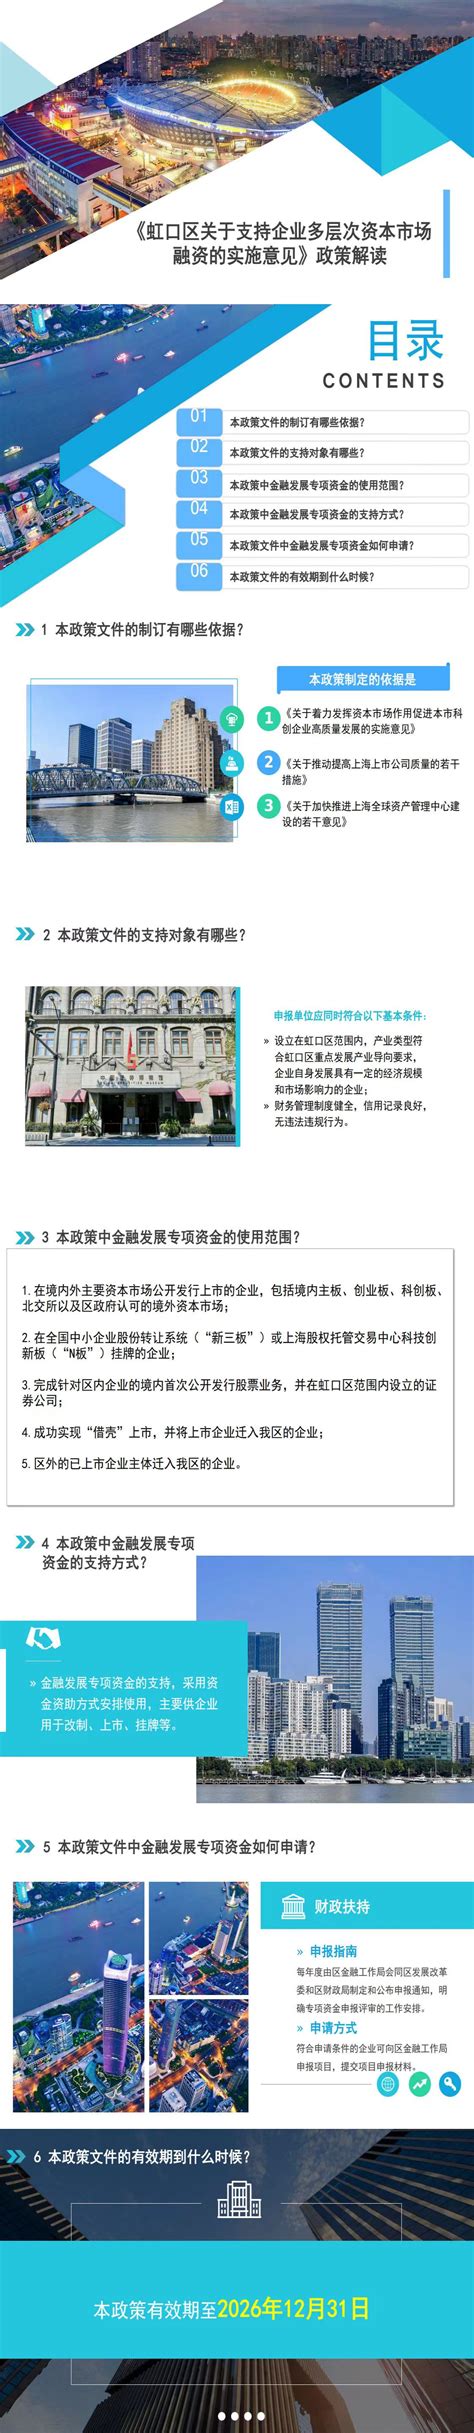 上海虹口区必打卡的10个景点(上海虹口区旅游景点) - 联途